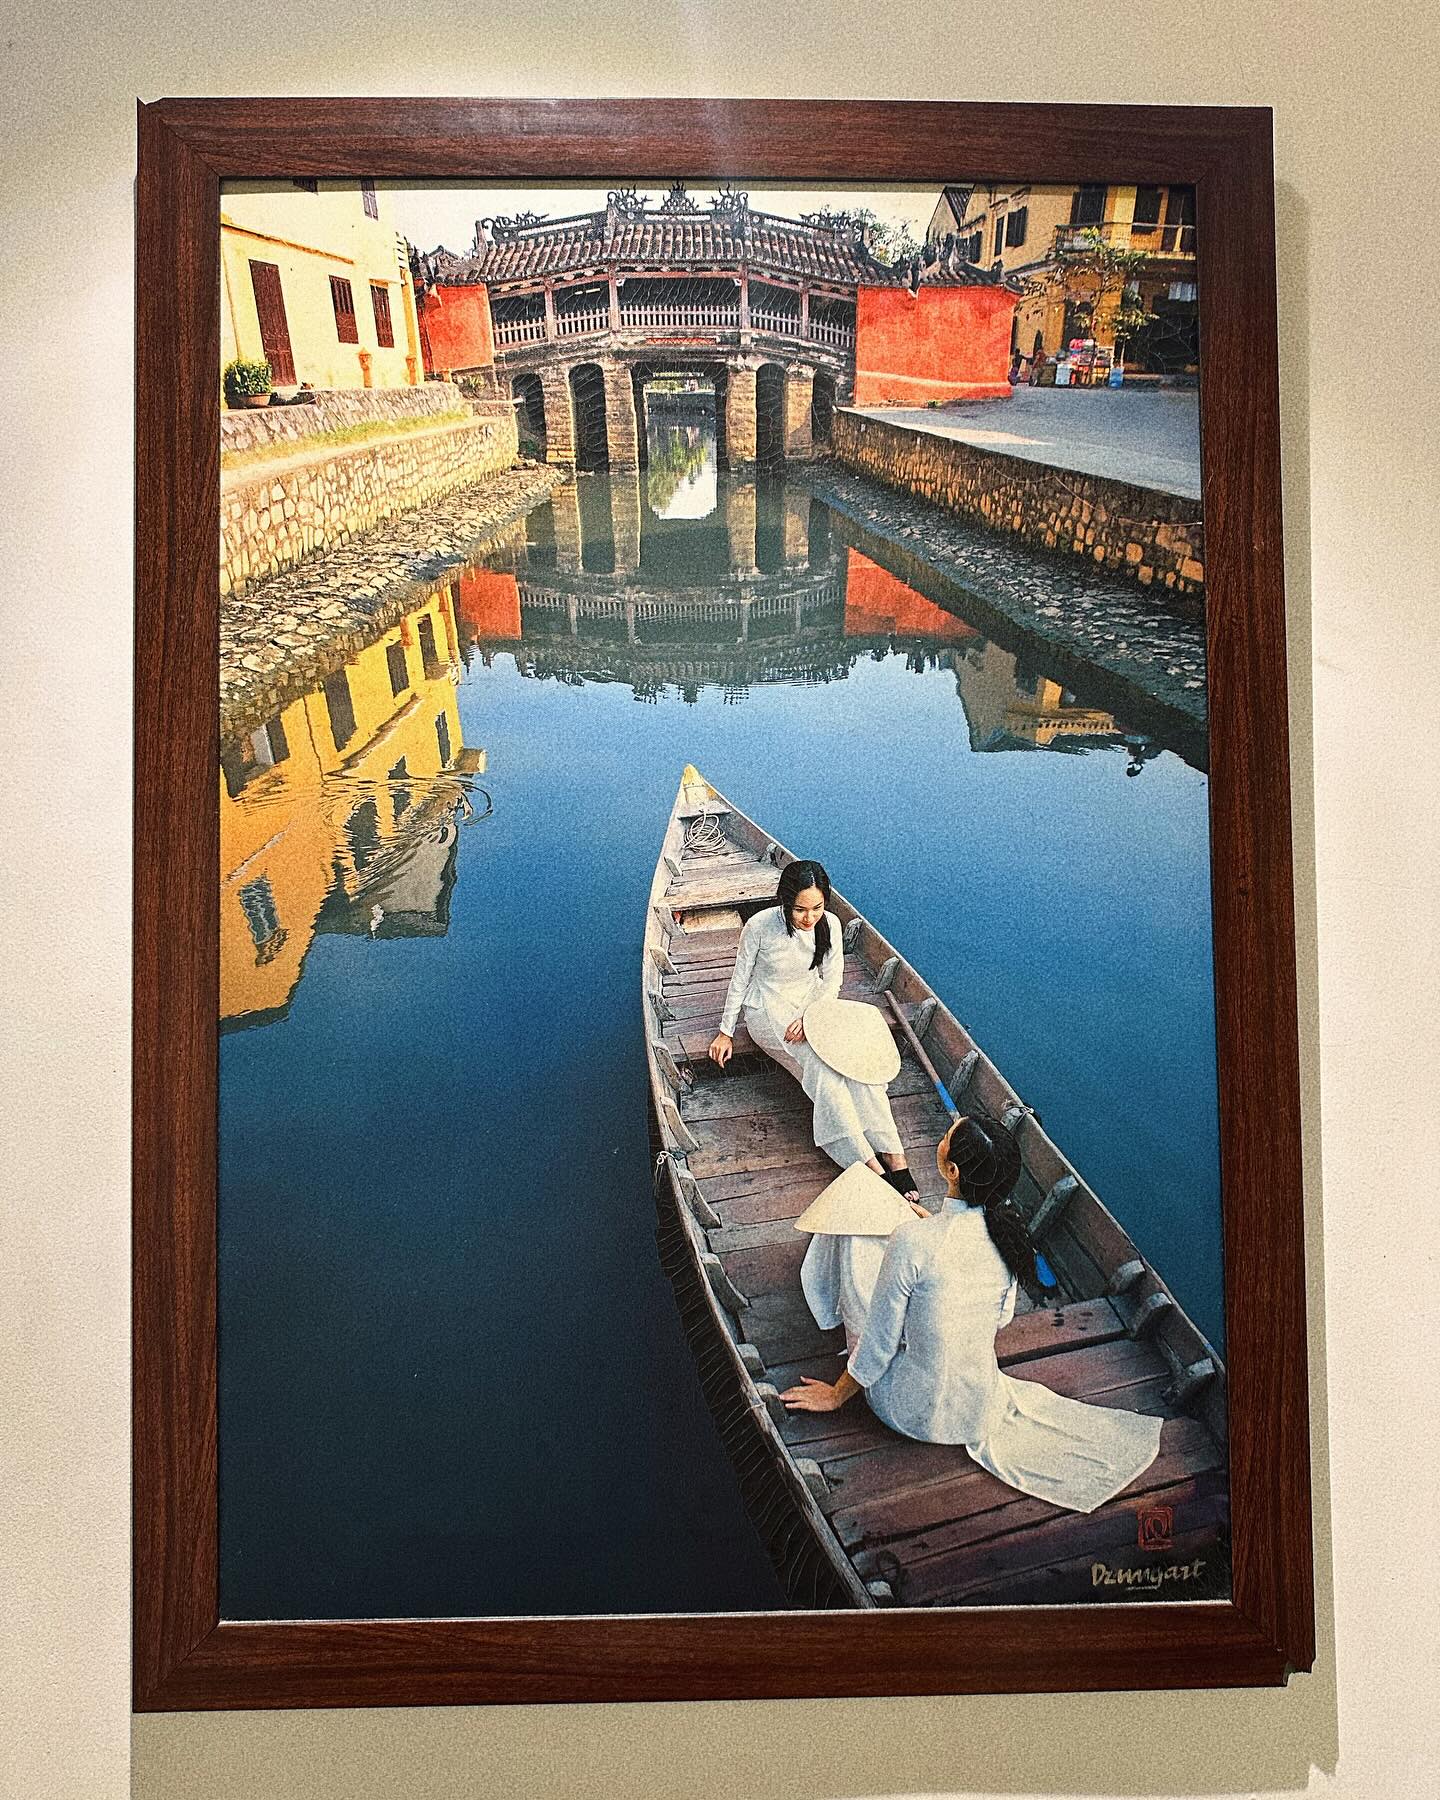 Người đẹp chụp lại bức ảnh treo trên quán, trên ảnh vẽ hình những cô gái mặc áo dài trắng, ngồi thuyền trên sông Hoài ở Hội An.